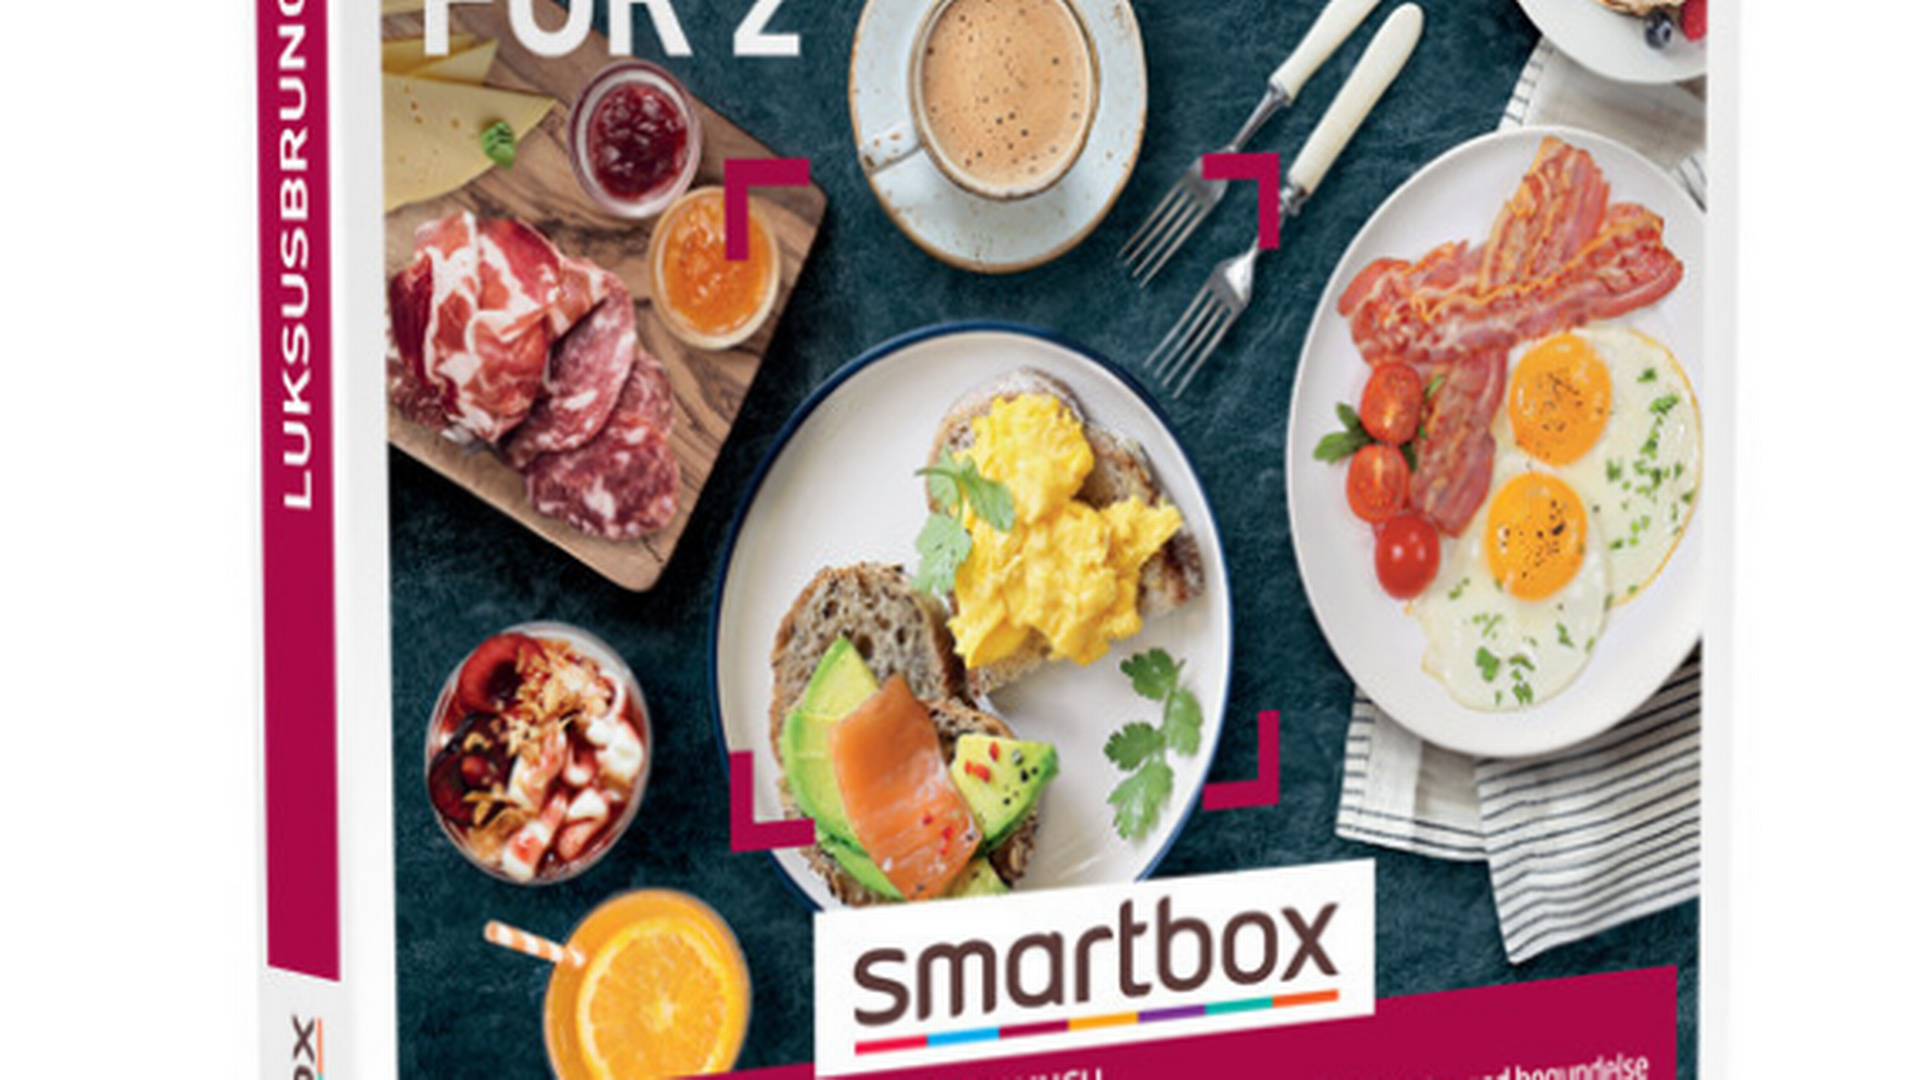 Smartbox er ejet af det irske moderselskab Smartbox Group | Foto: Smartbox/Pr